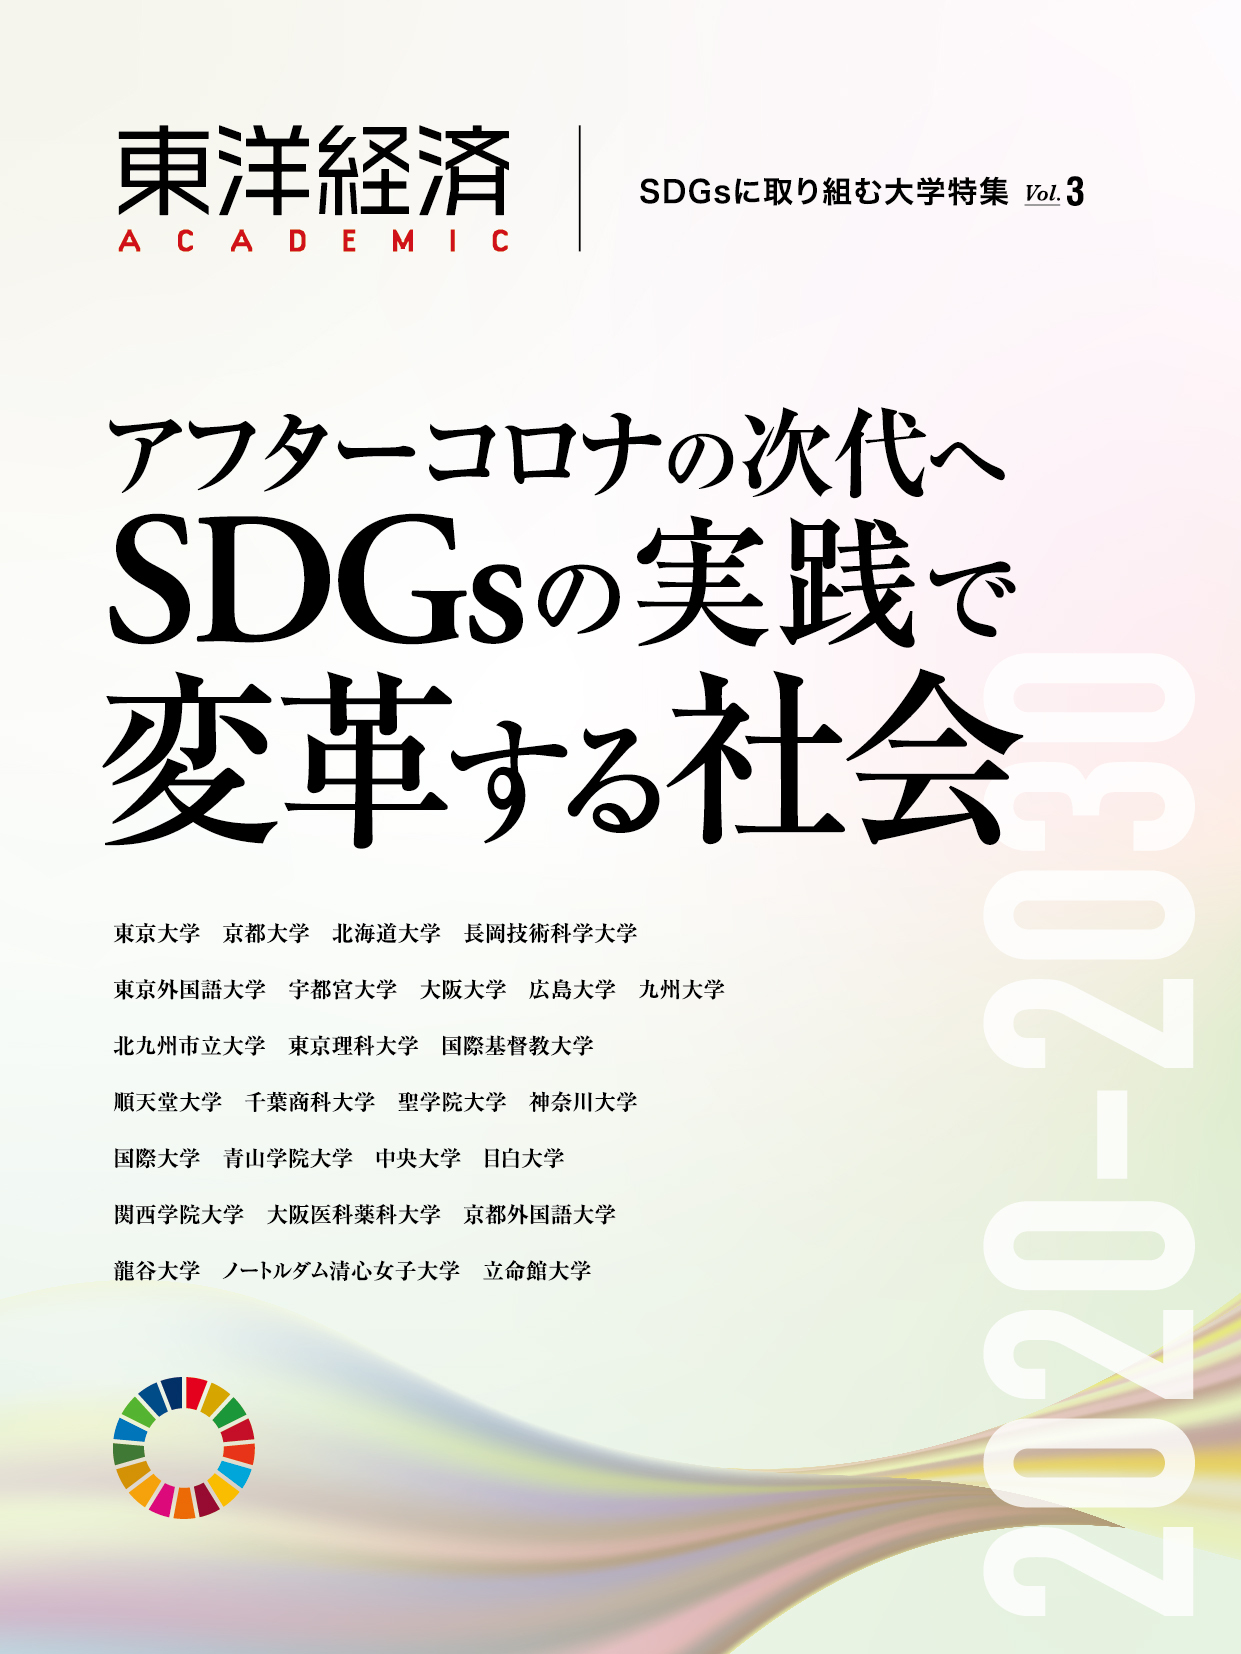 東洋経済ACADEMIC　SDGsに取り組む大学特集　3の商品画像